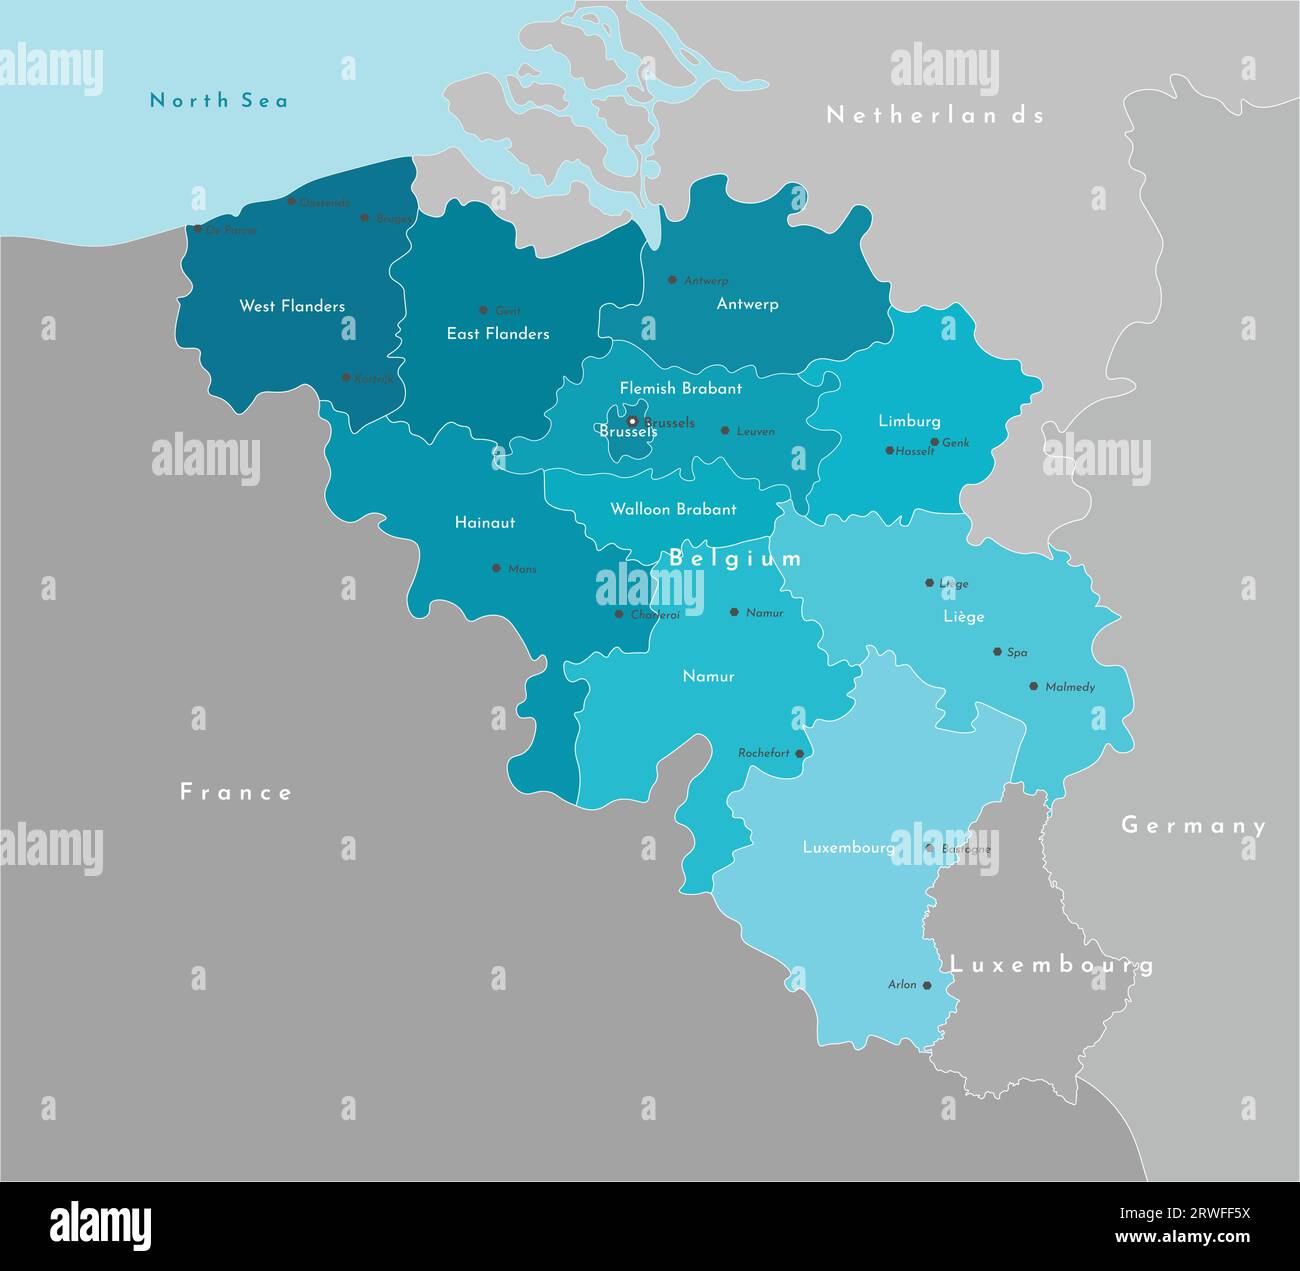 Vector Modern Illustration. Vereinfachte geografische Karte von Belgien und den nächstgelegenen Ländern. Blauer Hintergrund der Nordsee. Namen der belgischen Städte und p Stock Vektor